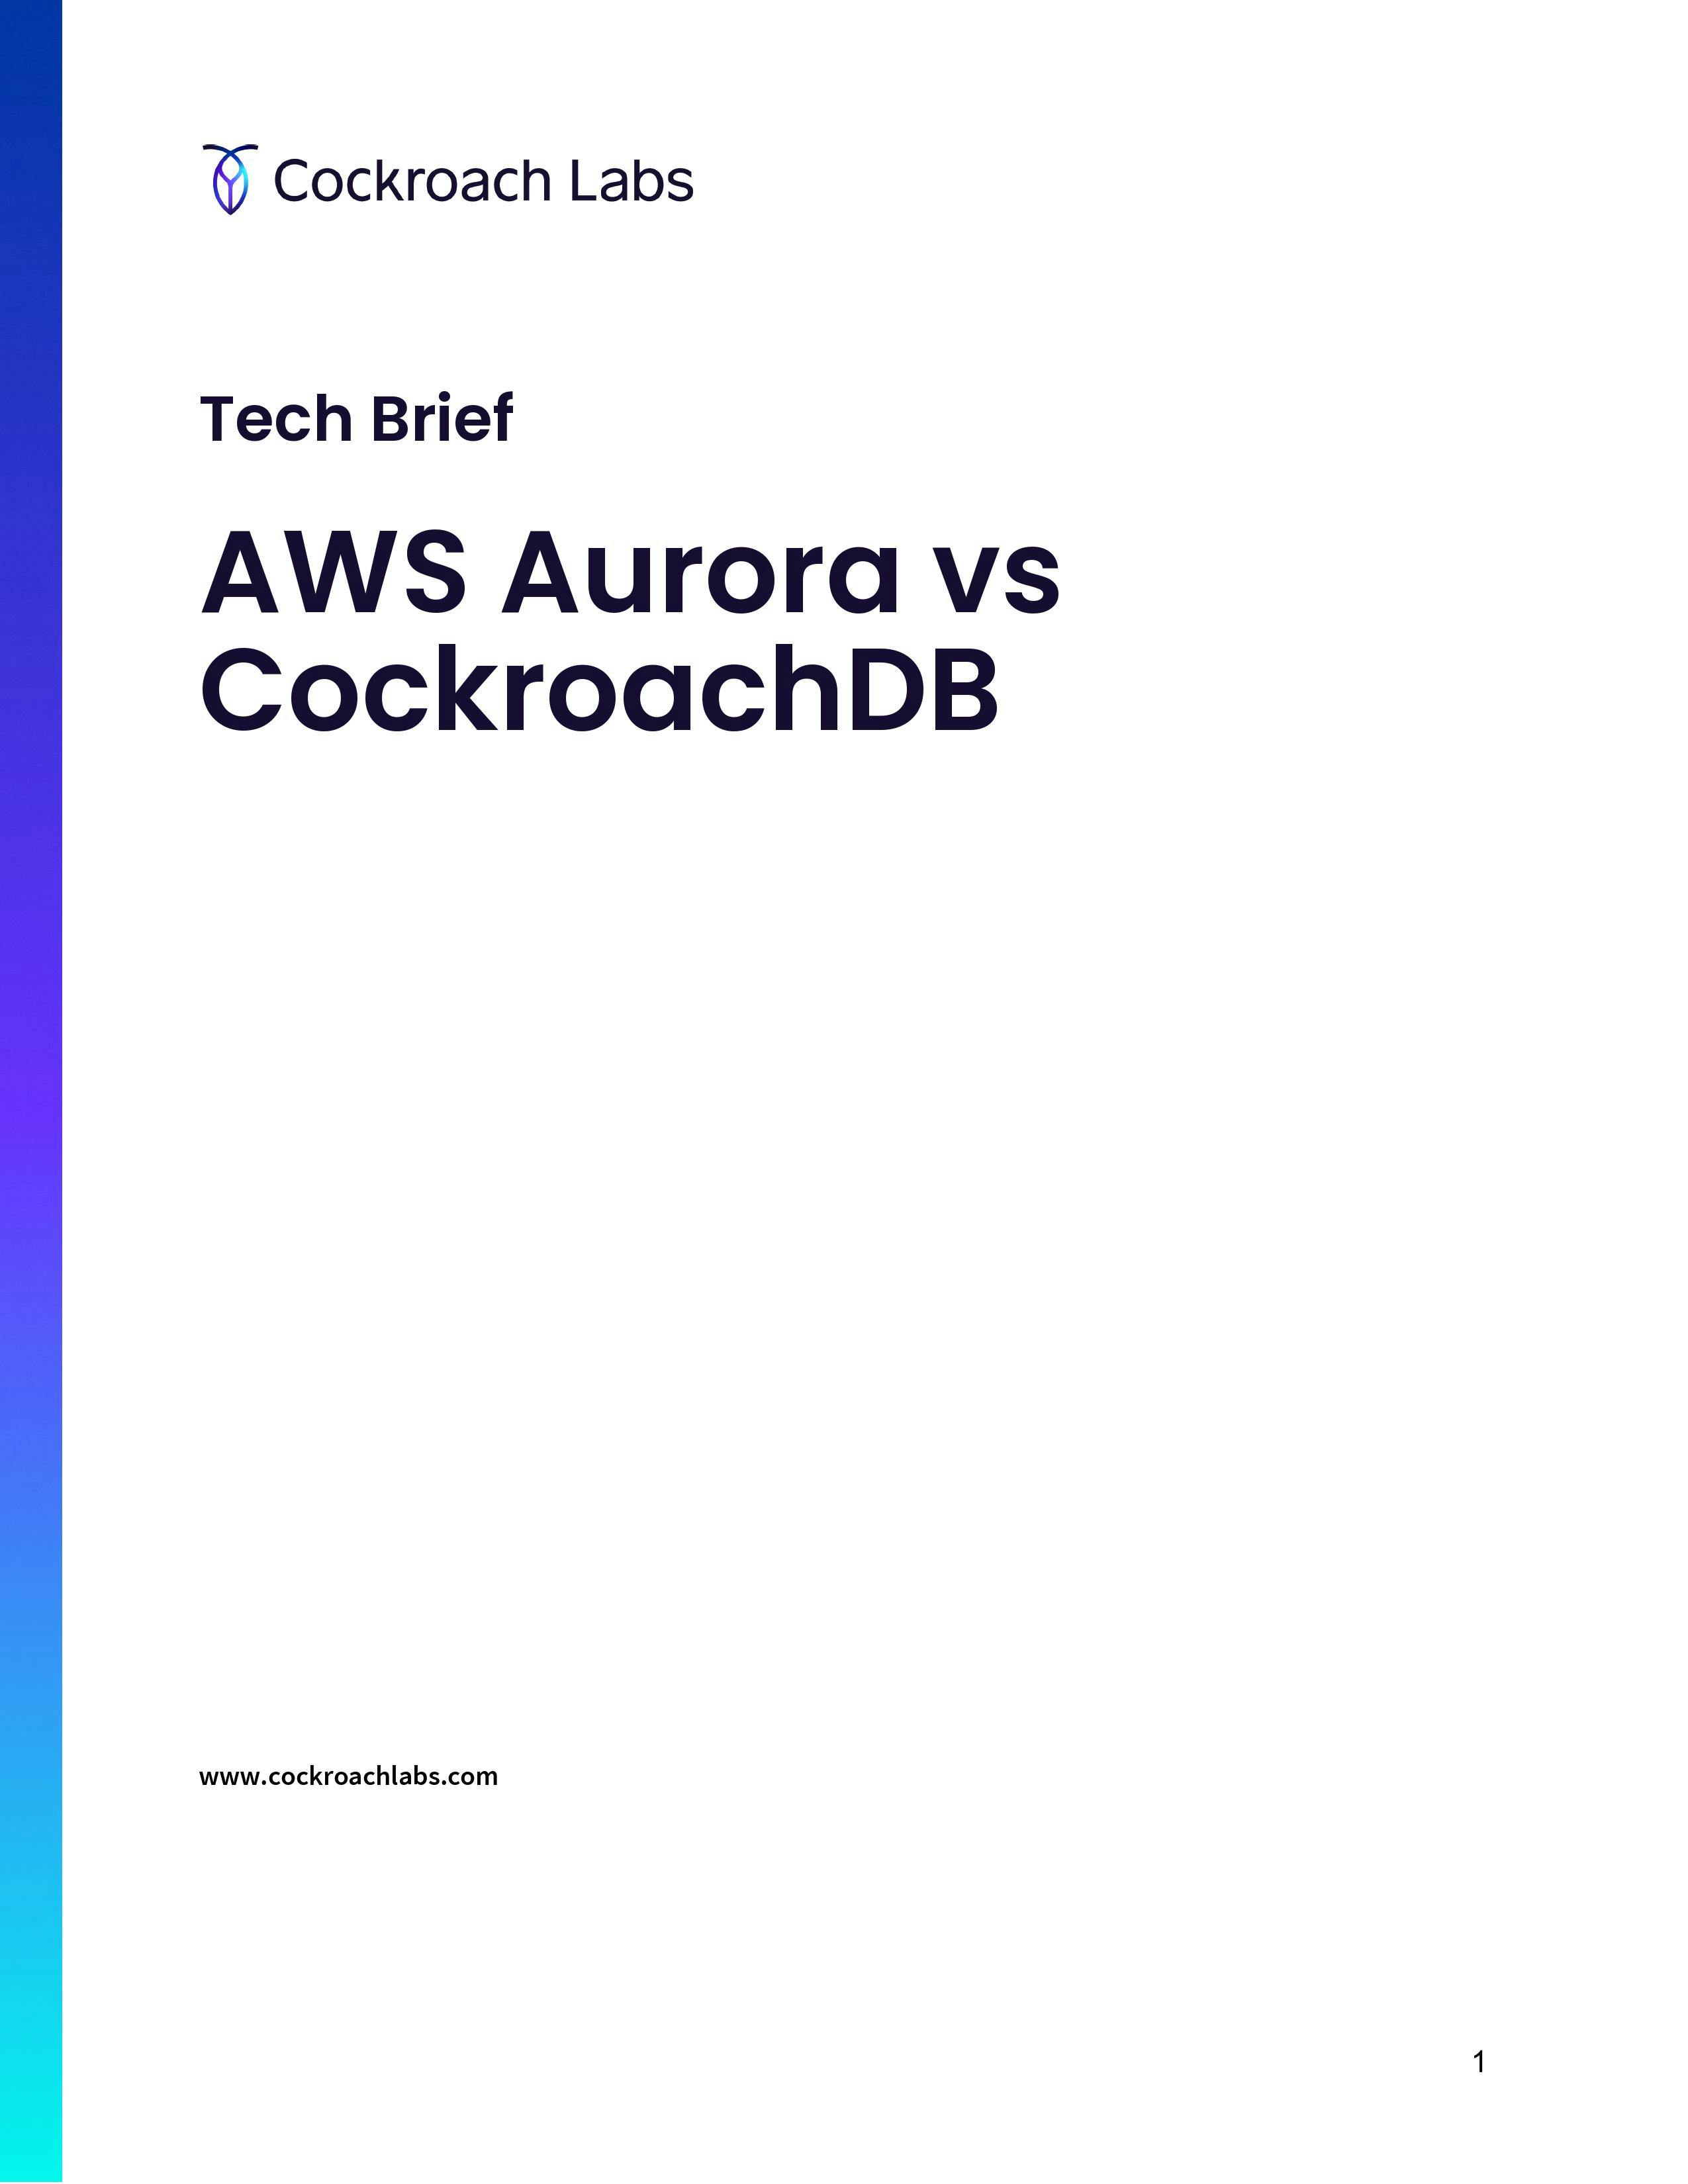 AWS Aurora vs CockroachDB